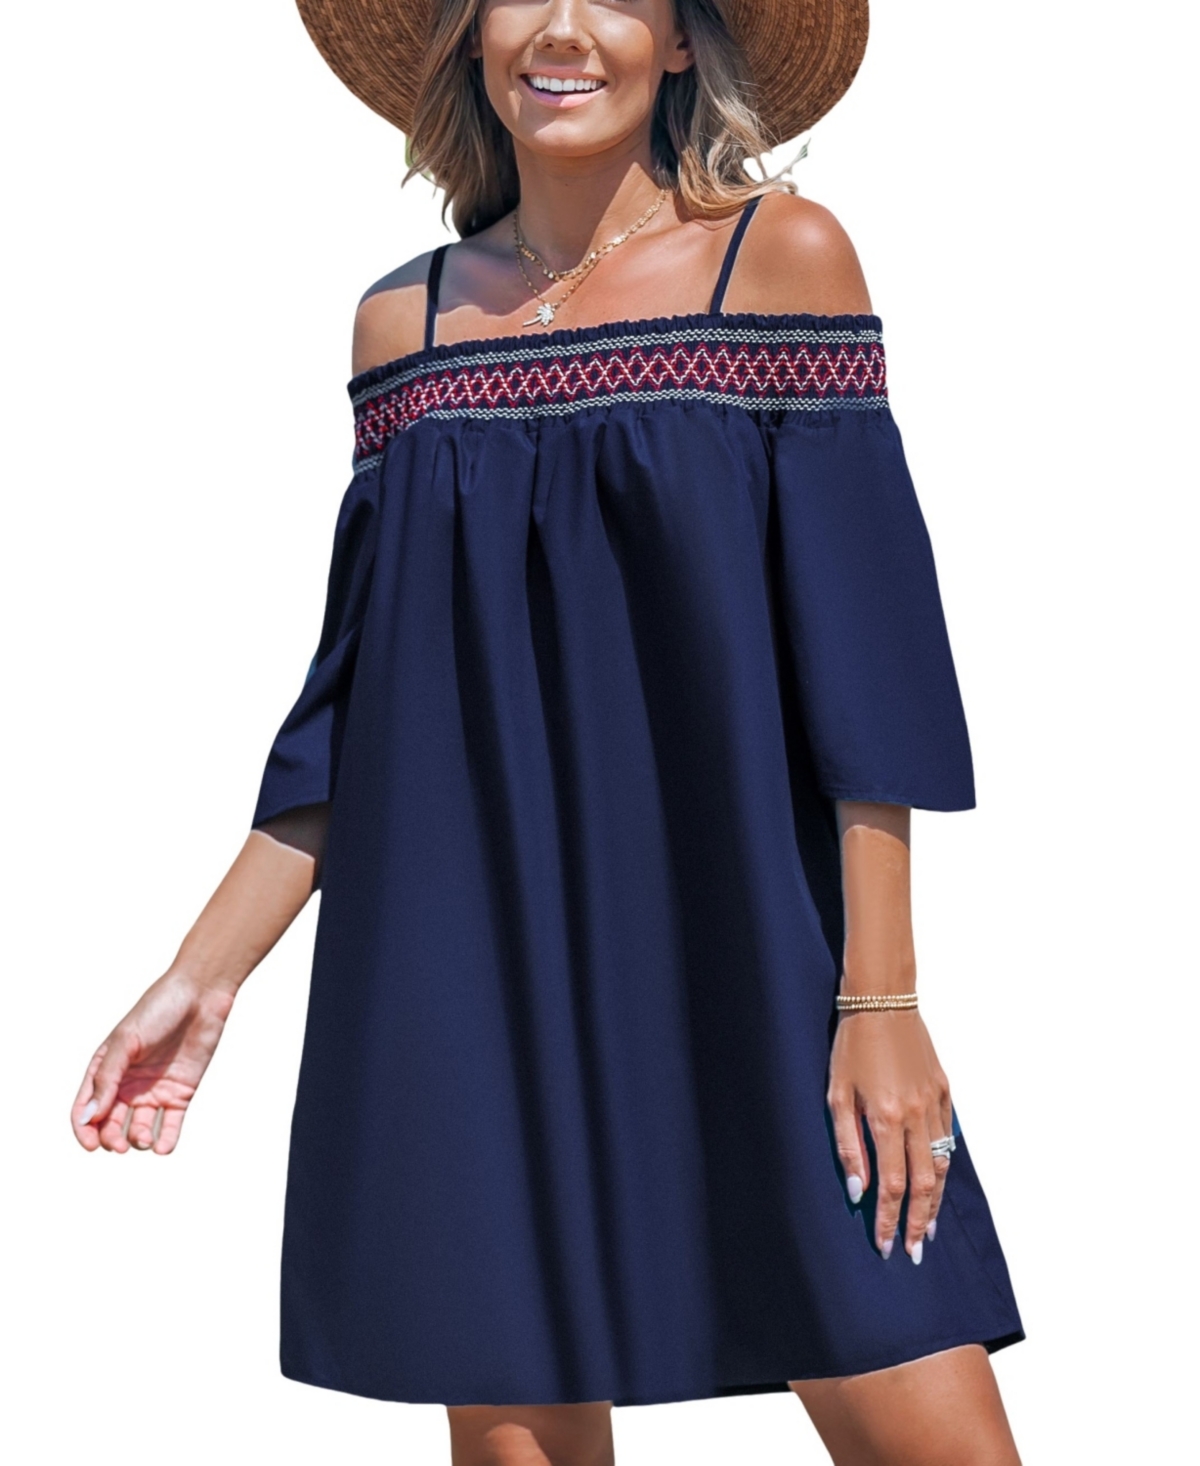 Women's Smocked Lace Open-Shoulder Beach Dress - Dark blue